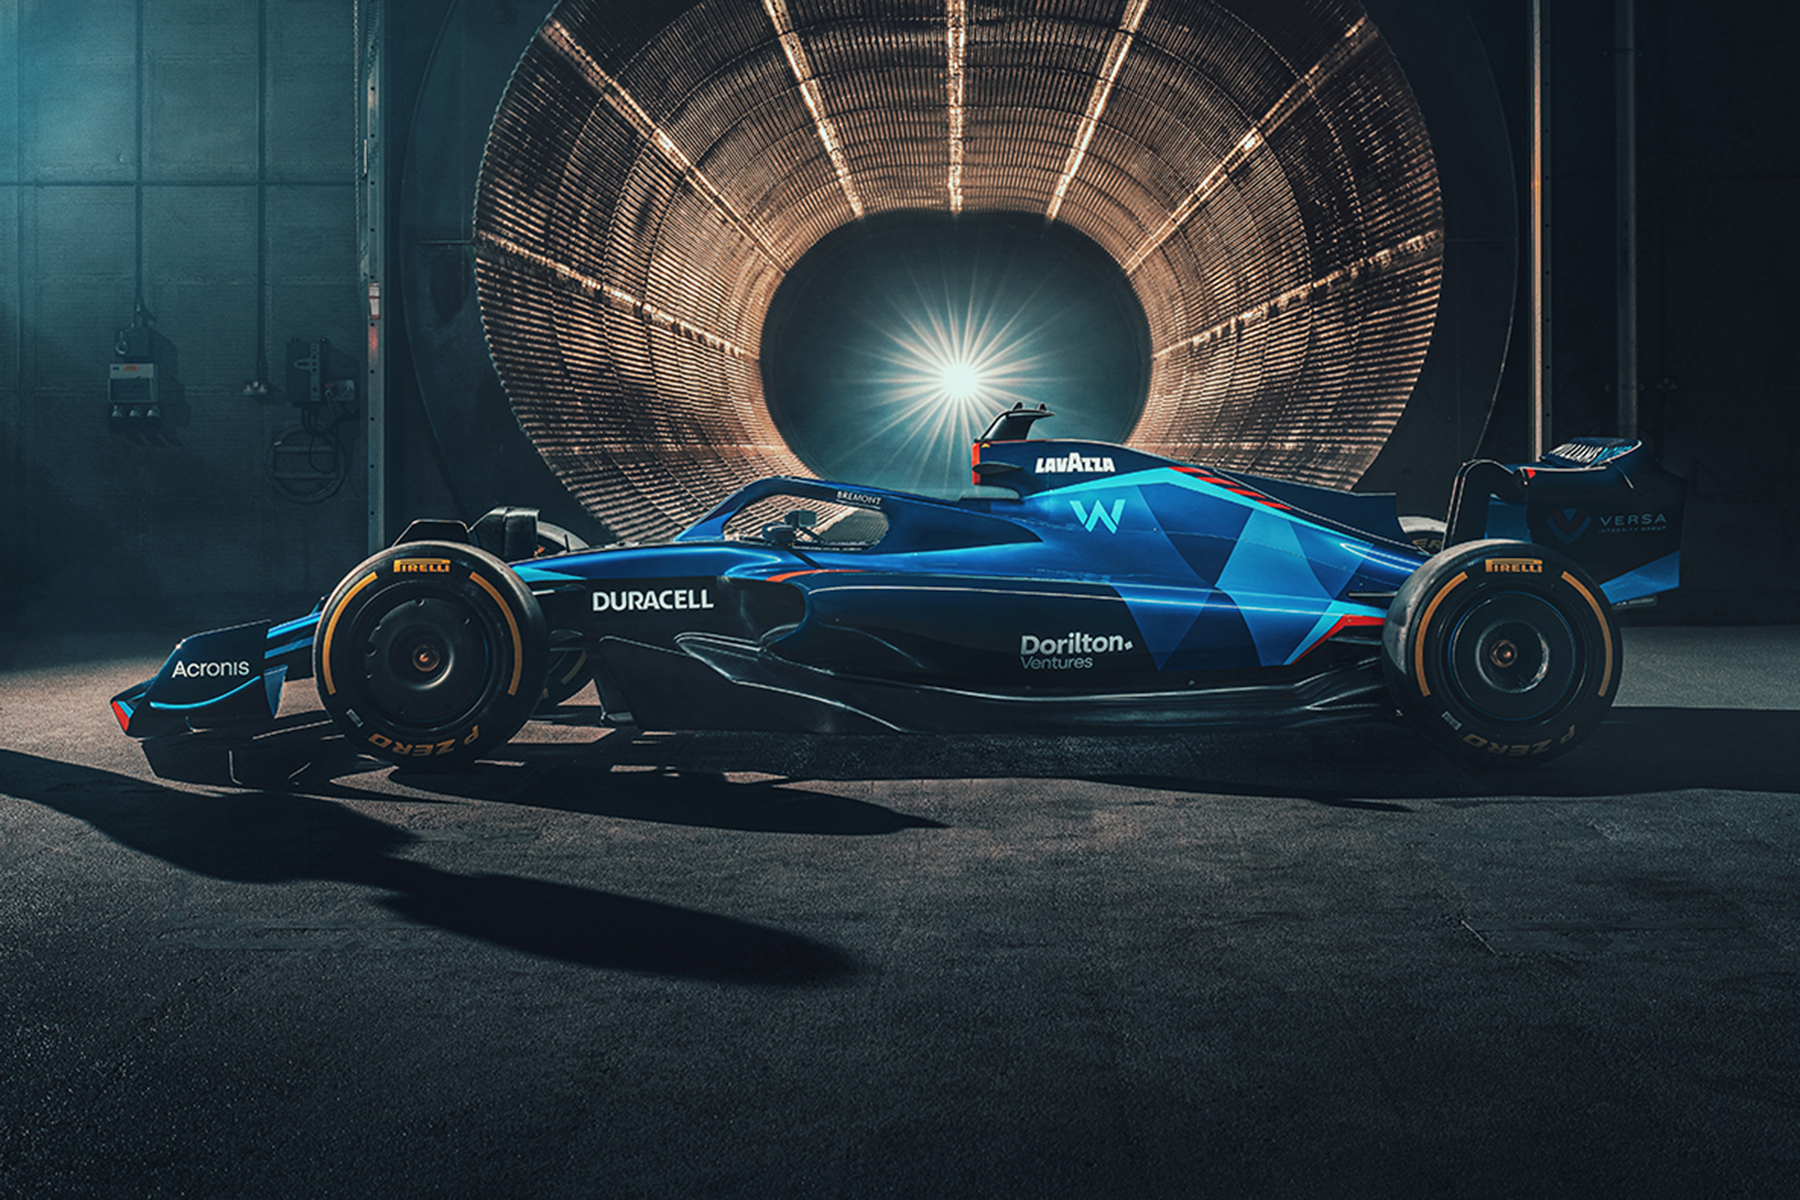 Formel 1 Williams Racing FW44 2022